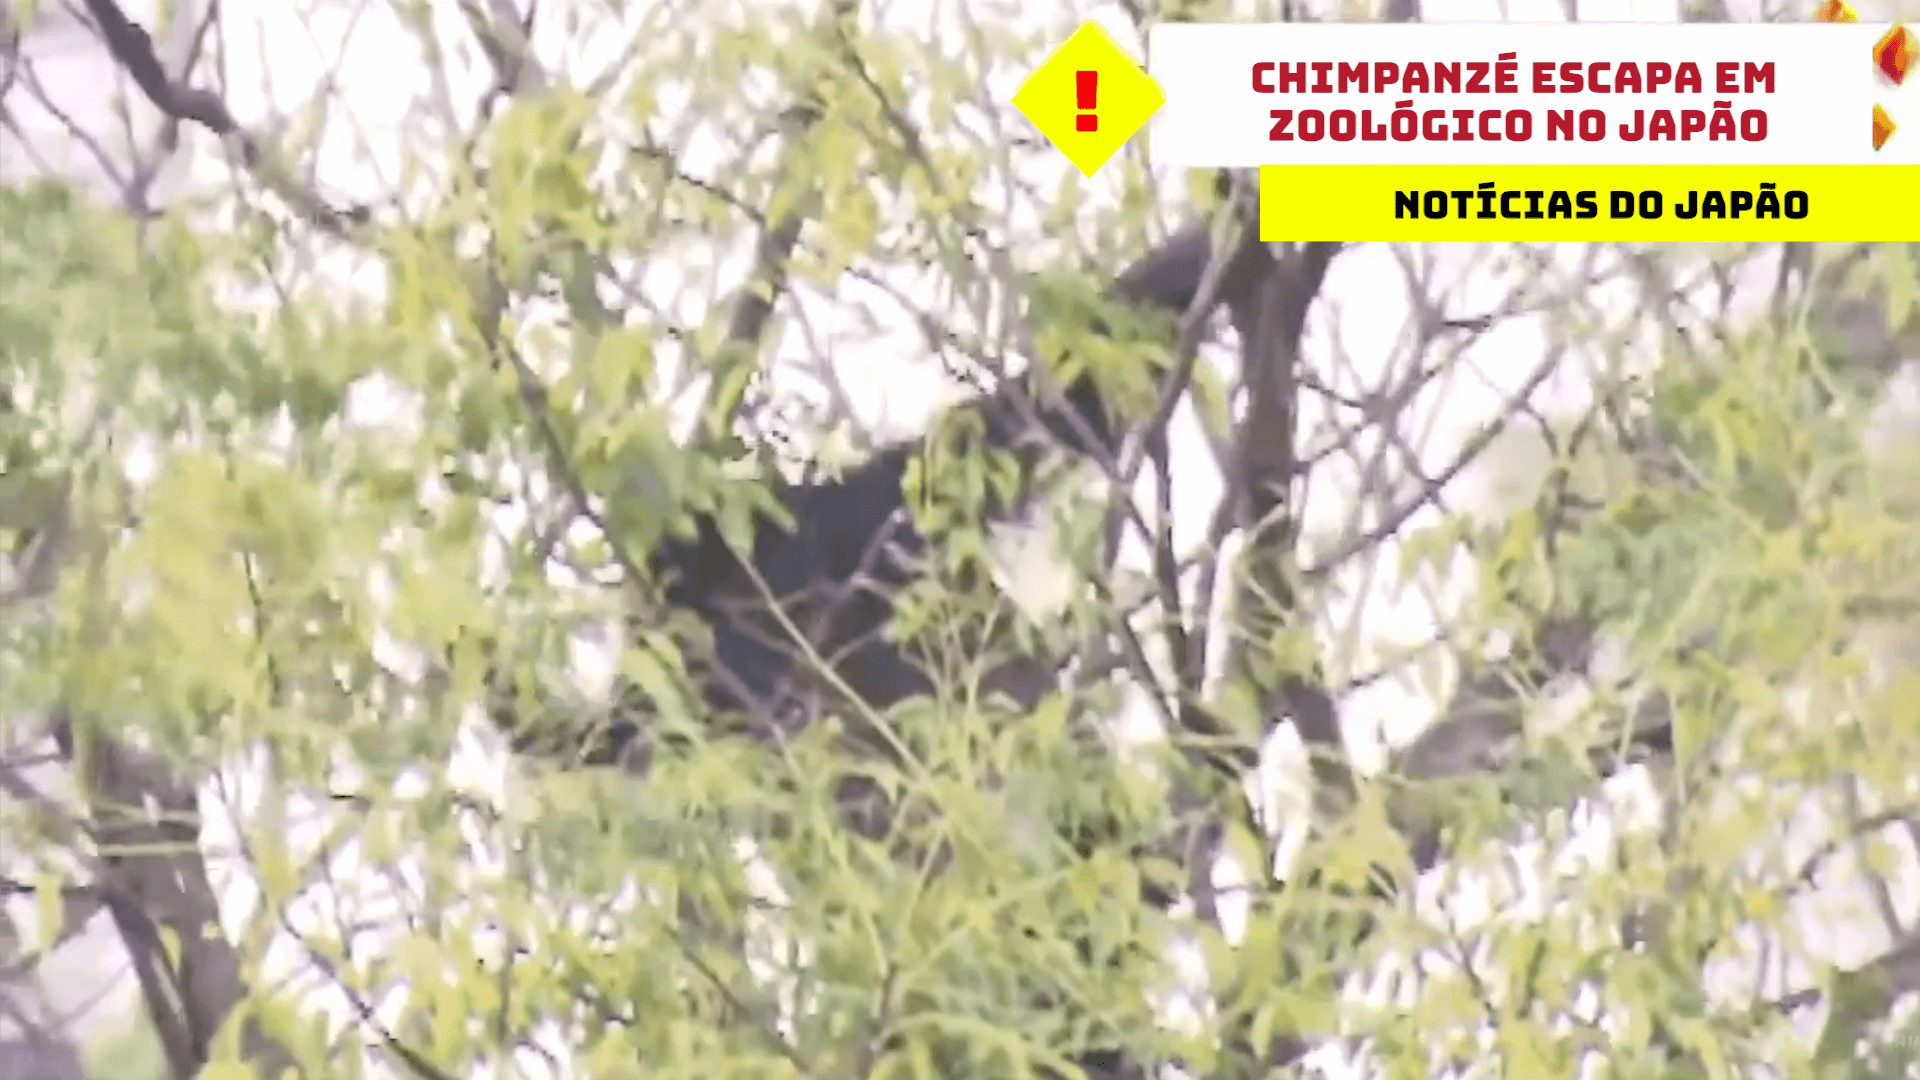 Chimpanzé escapa em zoológico no Japão 